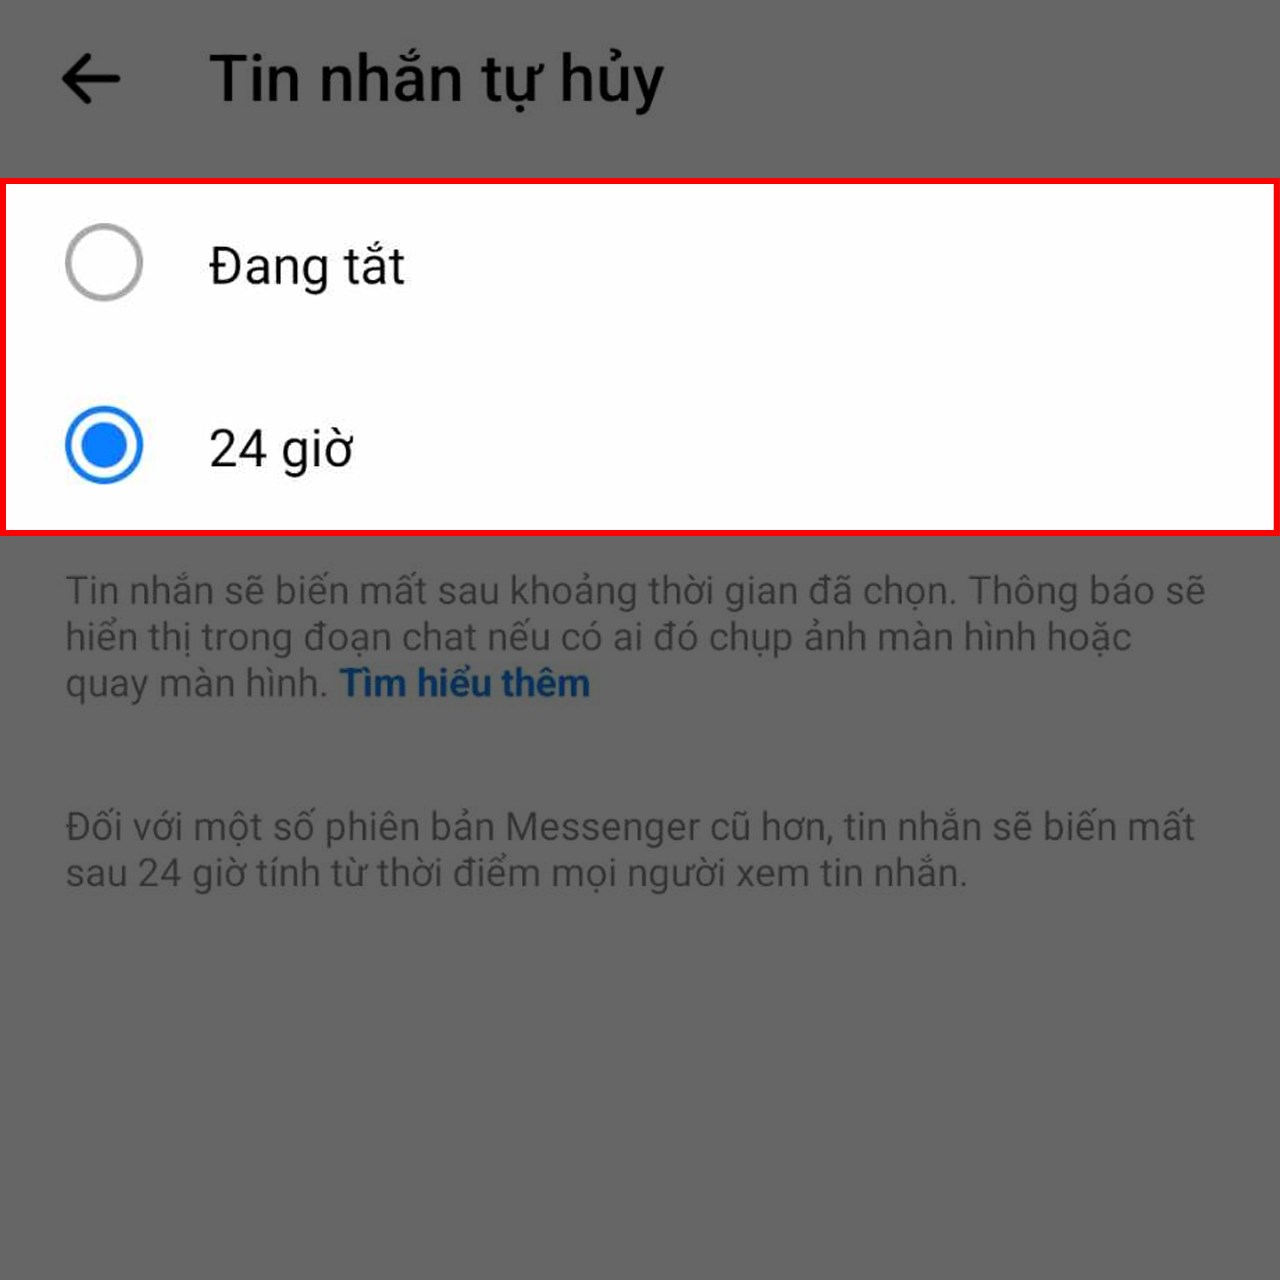 Hướng dẫn cách bật chế độ tin nhắn tự hủy trên Messenger